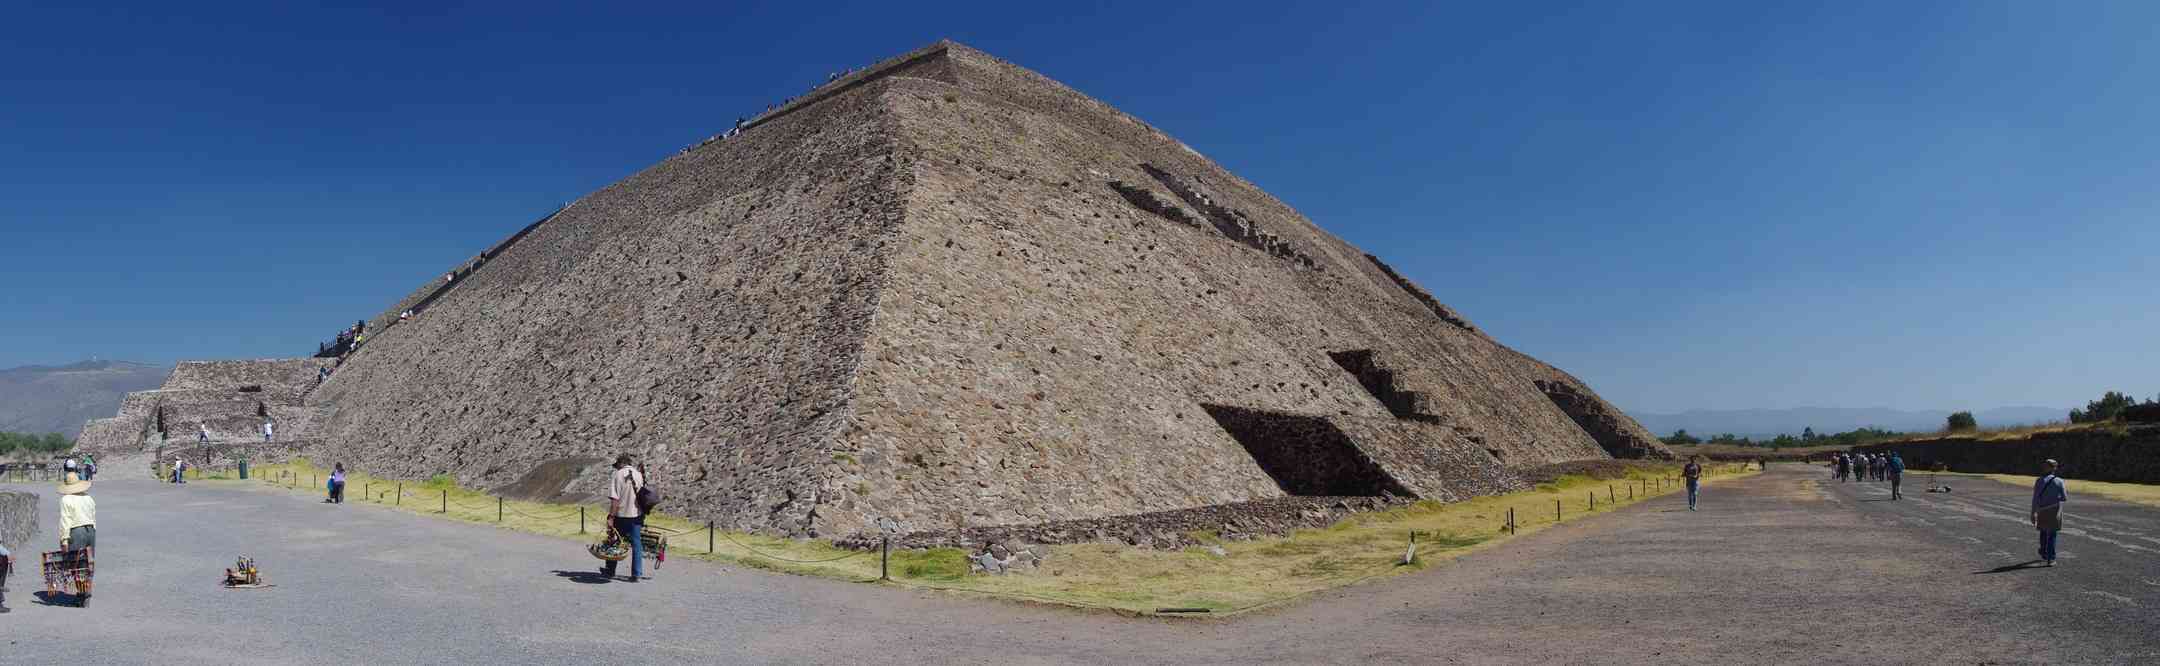 Teotihuacán (panoramique de la pyramide du soleil), le 21 janvier 2016